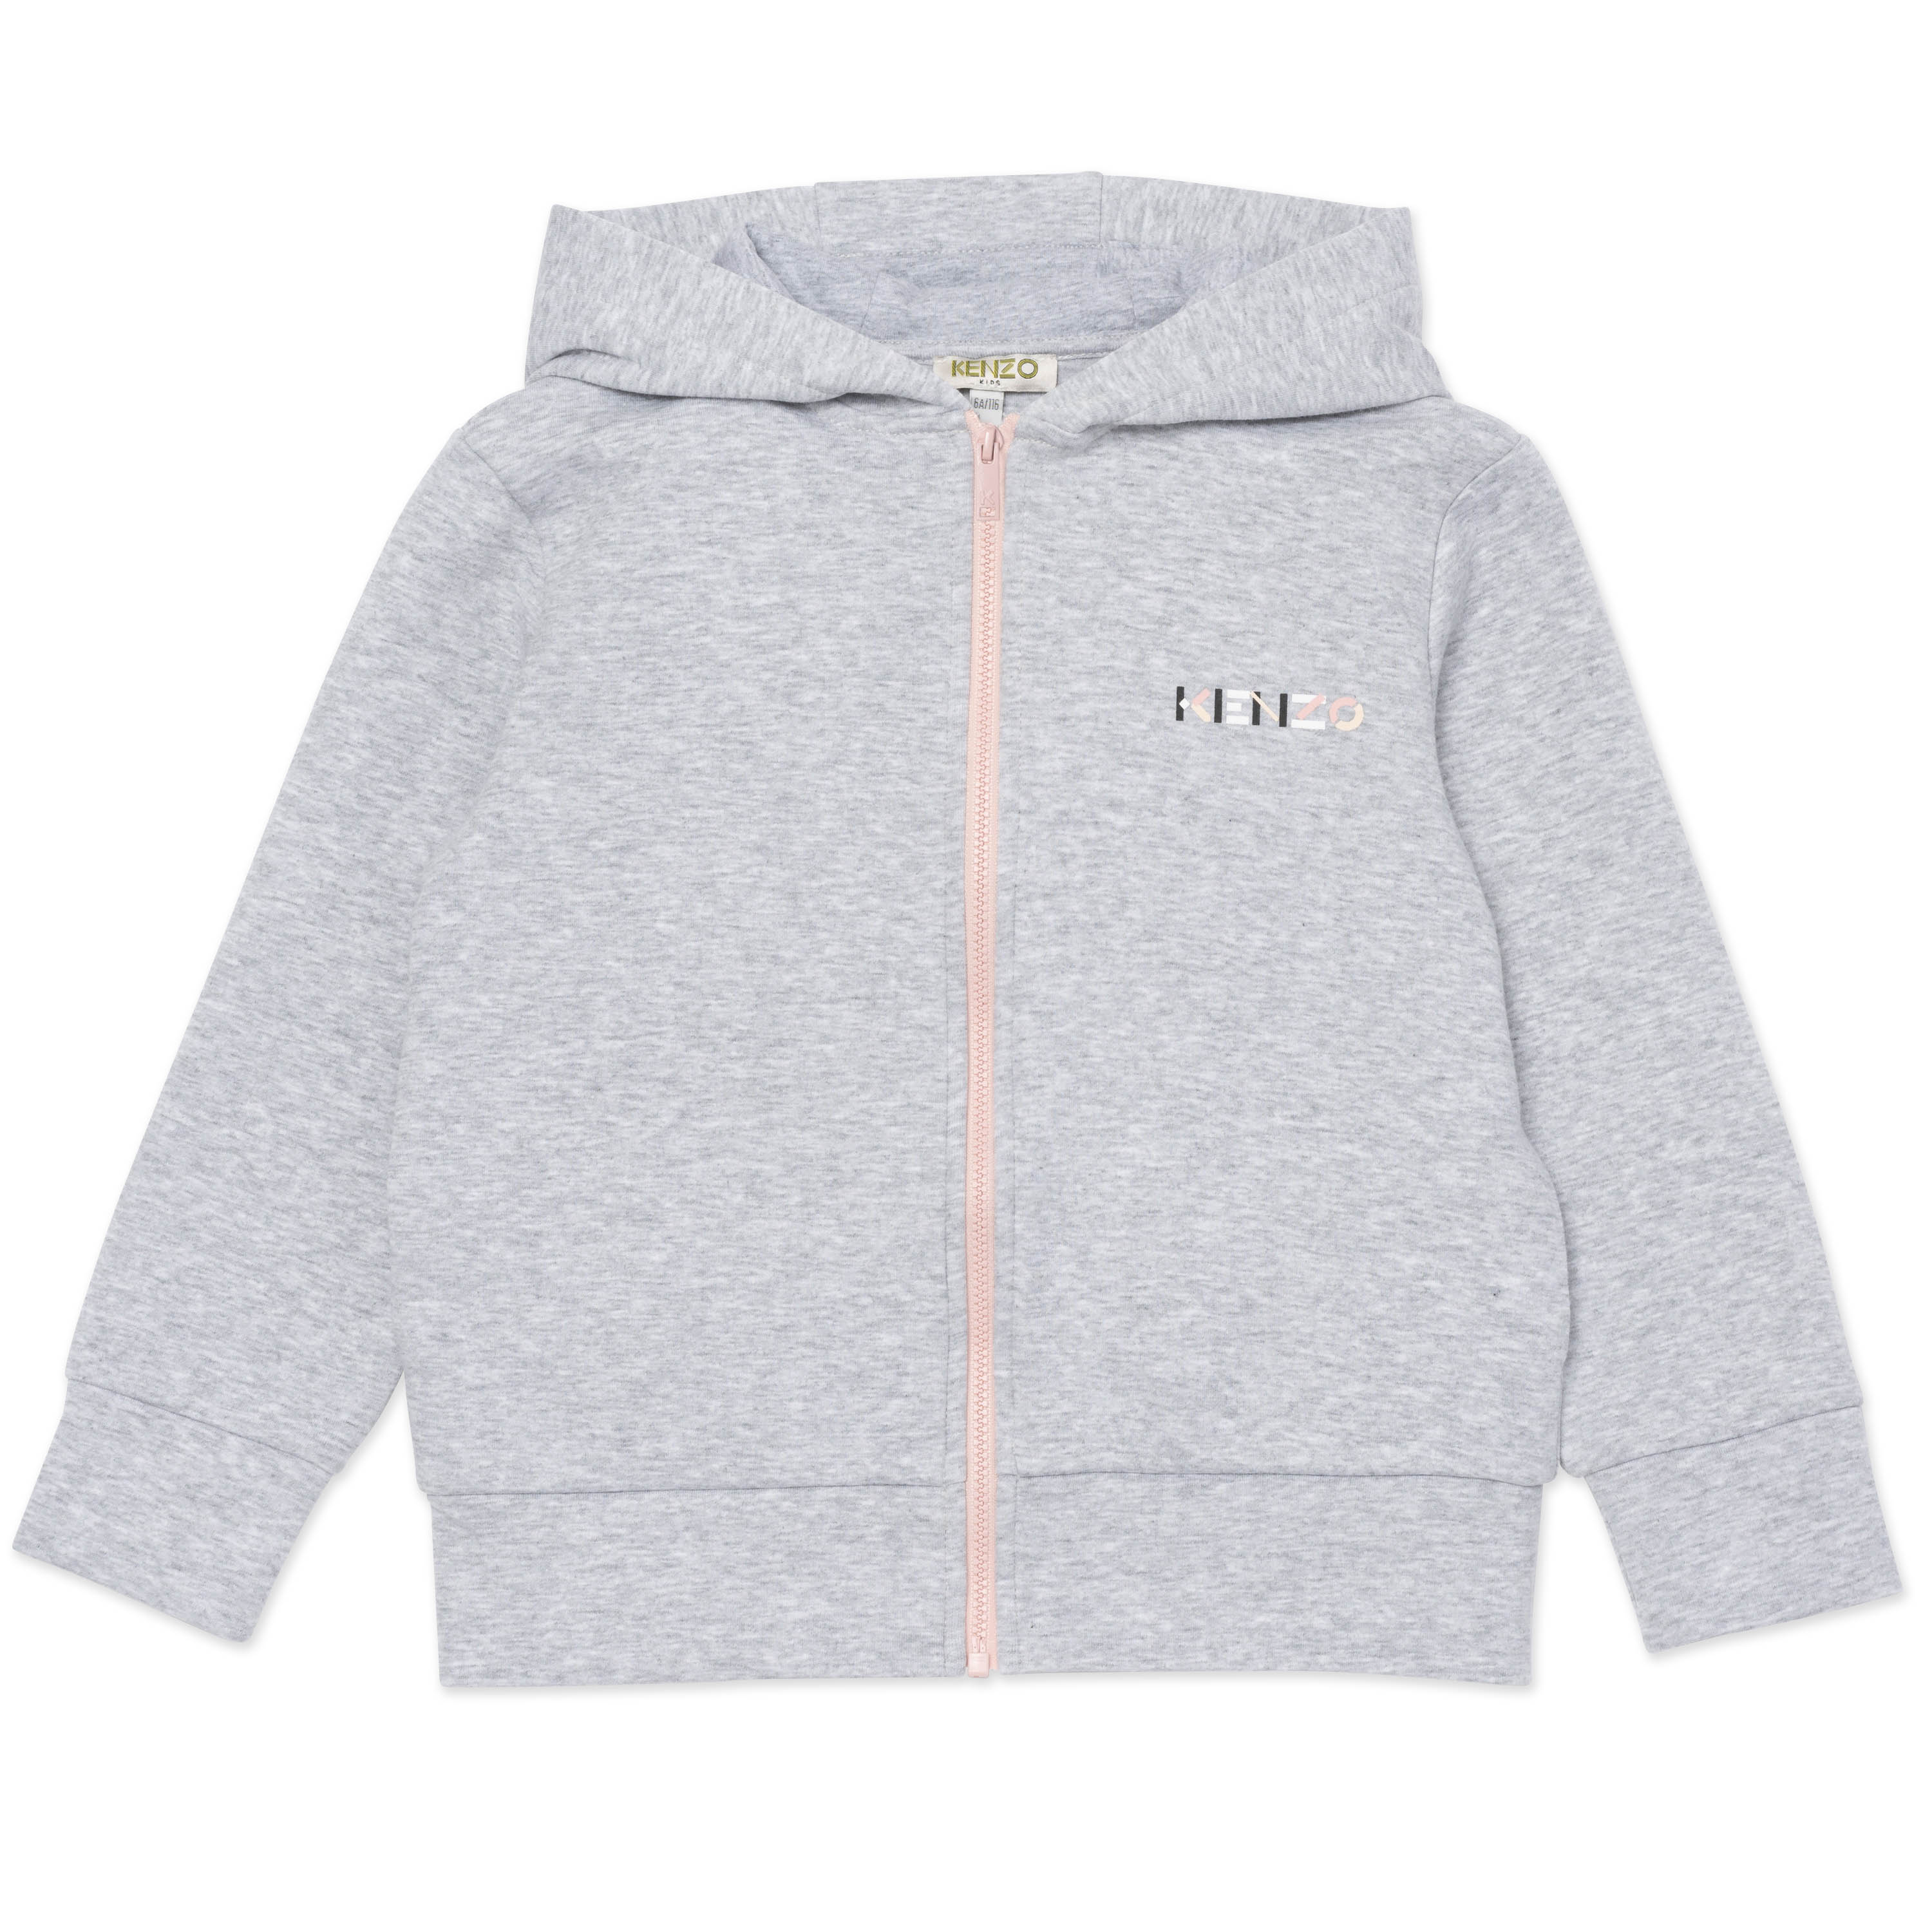 Zipped hooded sweatshirt KENZO KIDS for GIRL